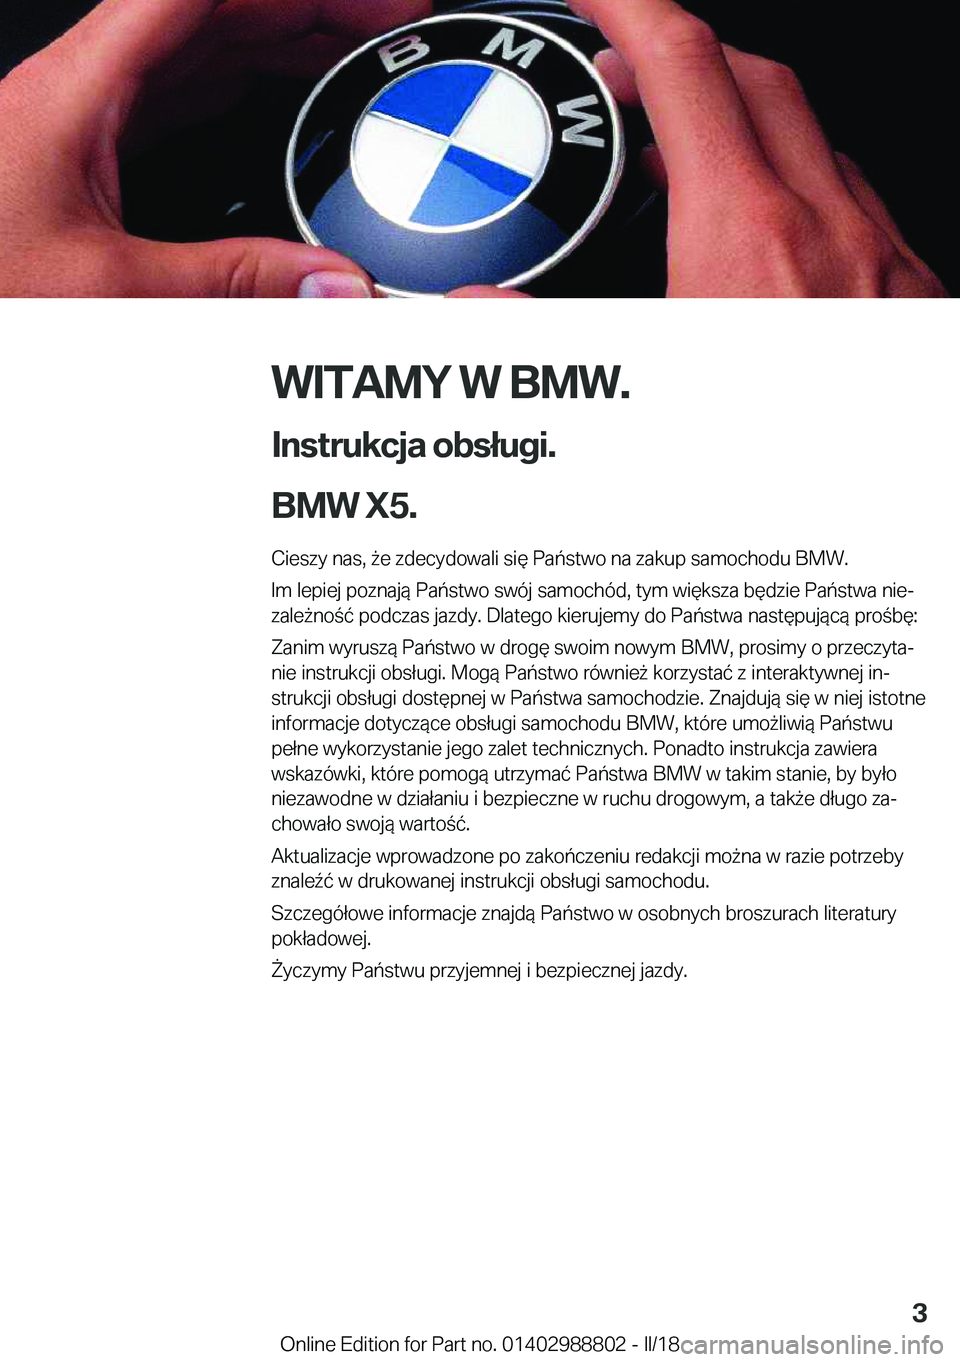 BMW X5 2018  Instrukcja obsługi (in Polish) �W�I�T�A�M�Y��W��B�M�W�.
�I�n�s�t�r�u�k�c�j�a��o�b�s�ł�u�g�i�.
�B�M�W��X�5�. �C�i�e�s�z�y� �n�a�s�,�  9�e� �z�d�e�c�y�d�o�w�a�l�i� �s�i�